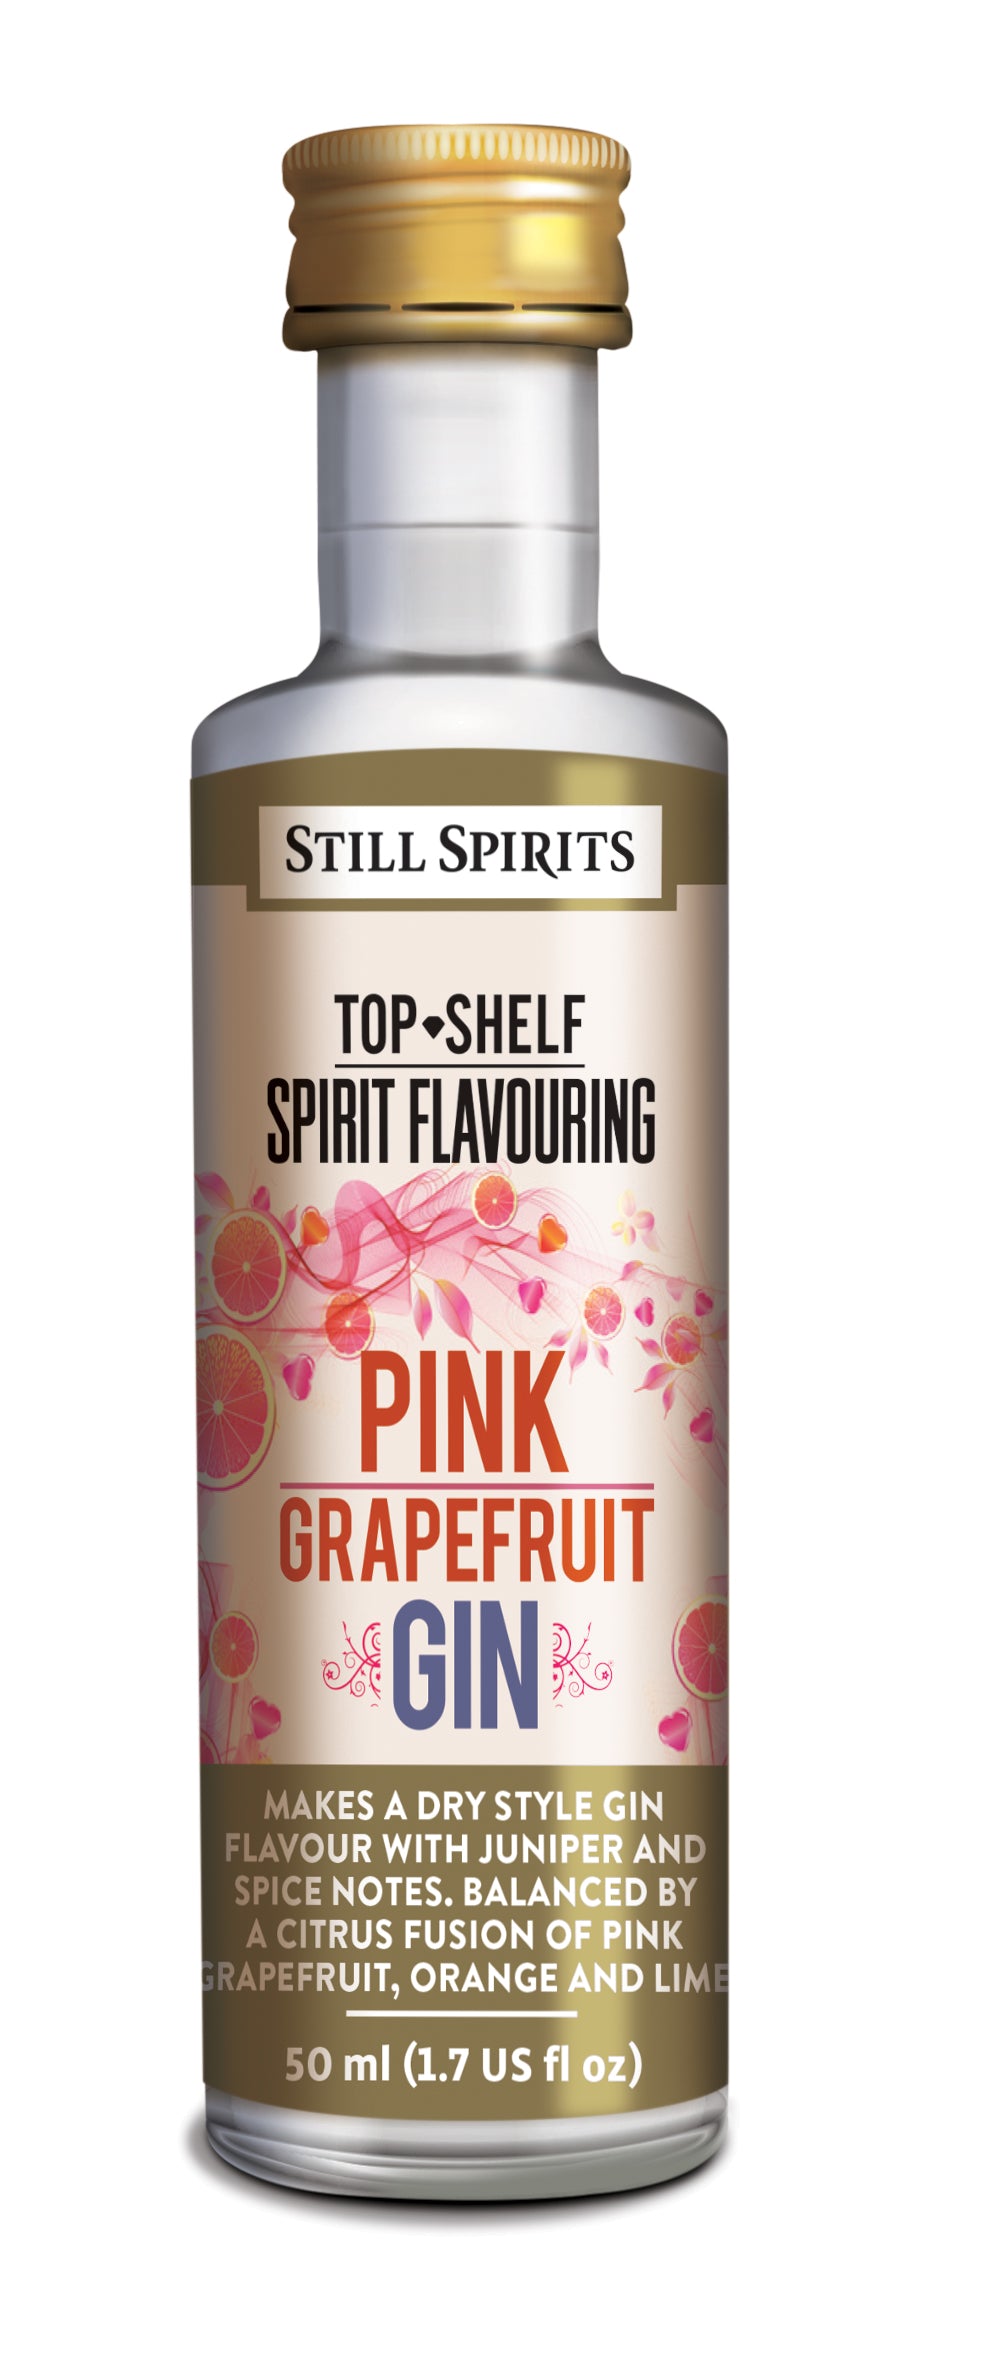 Still Spirits Top Shelf Pink Grapefruit Gin - All Things Fermented | Home Brew Shop NZ | Supplies | Equipment